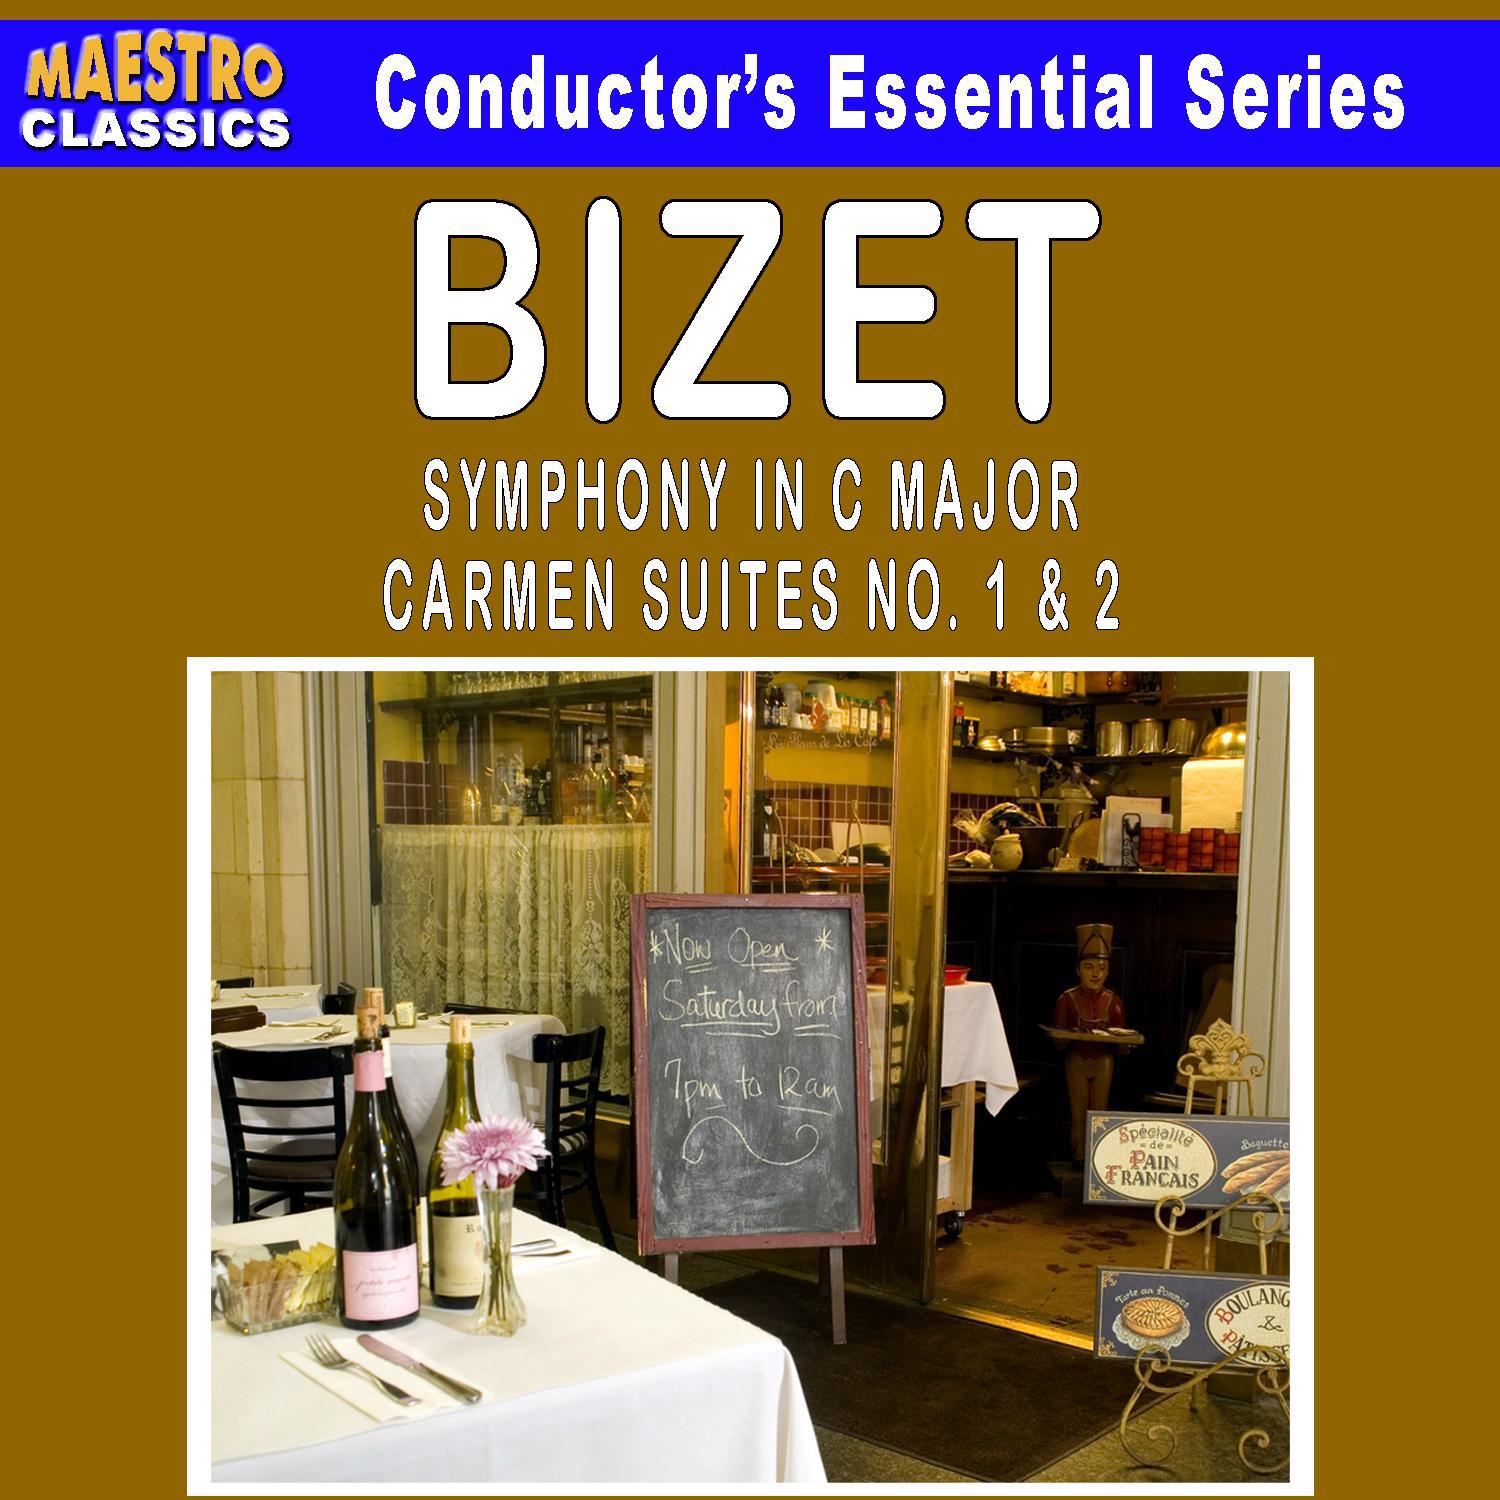 Bizet: Symphony in C Major - Carmen Suites No. 1 & 2